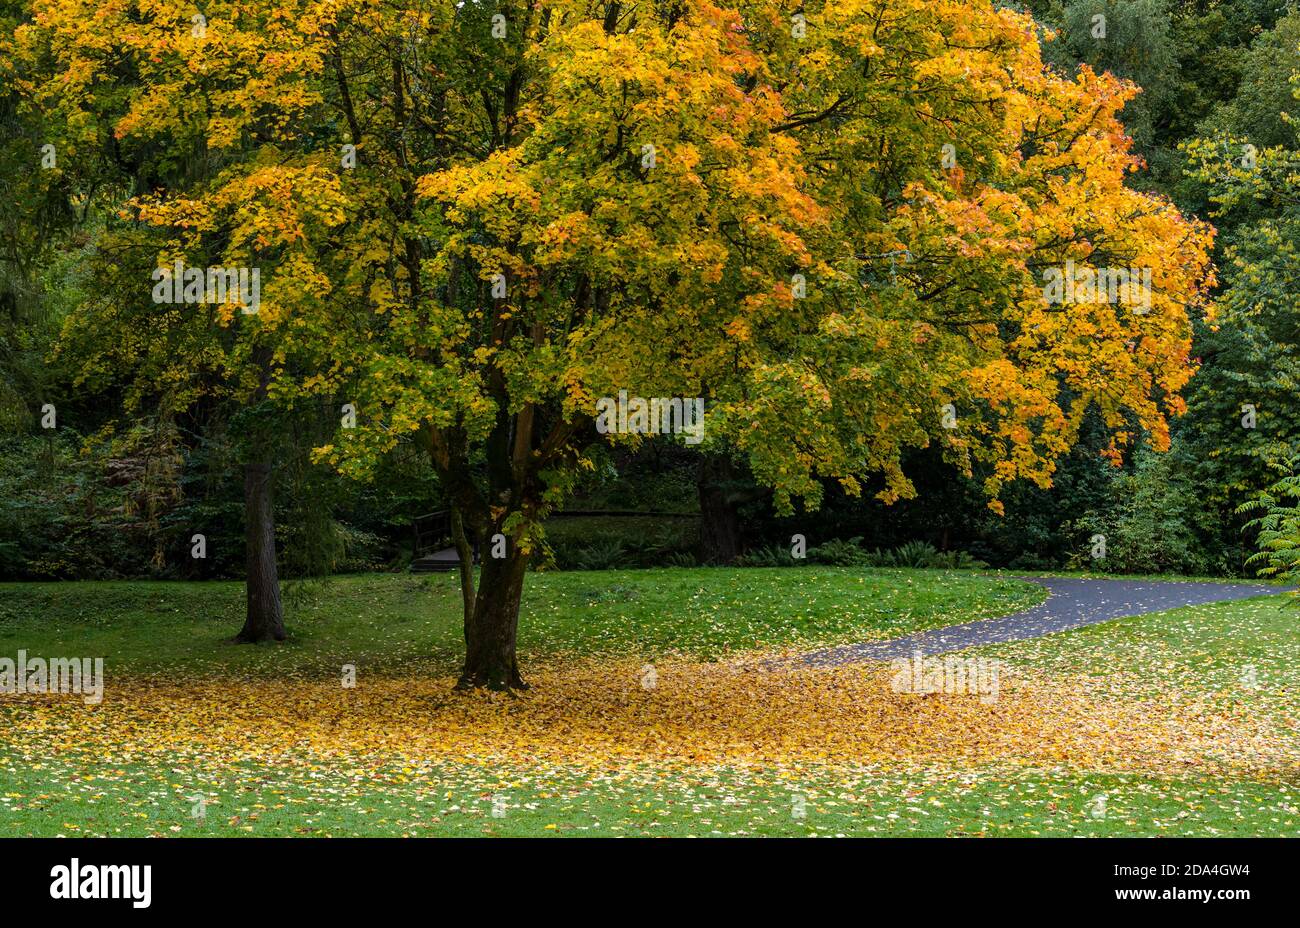 Albero d'acero autunnale con foglie che coprono il terreno, MacRosty Park, Crieff, Perthshire, Scozia, Regno Unito Foto Stock